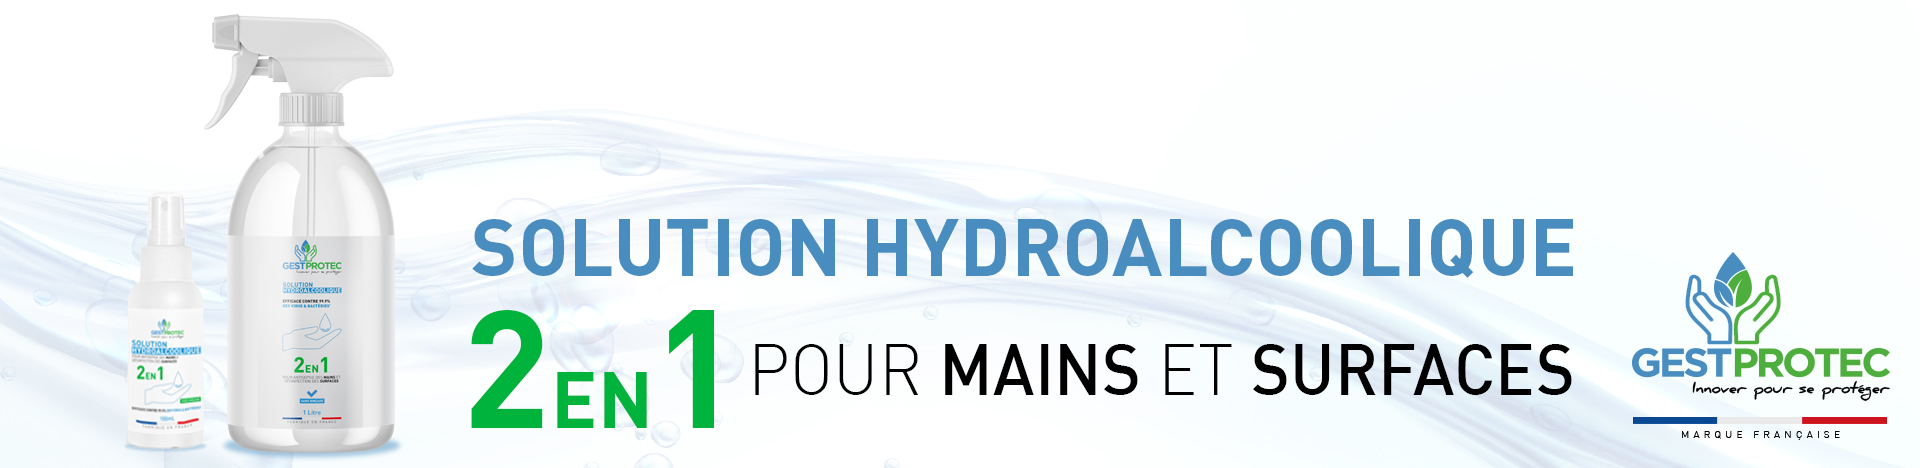 LHS - Solution_hydroalcoolique_bandeau